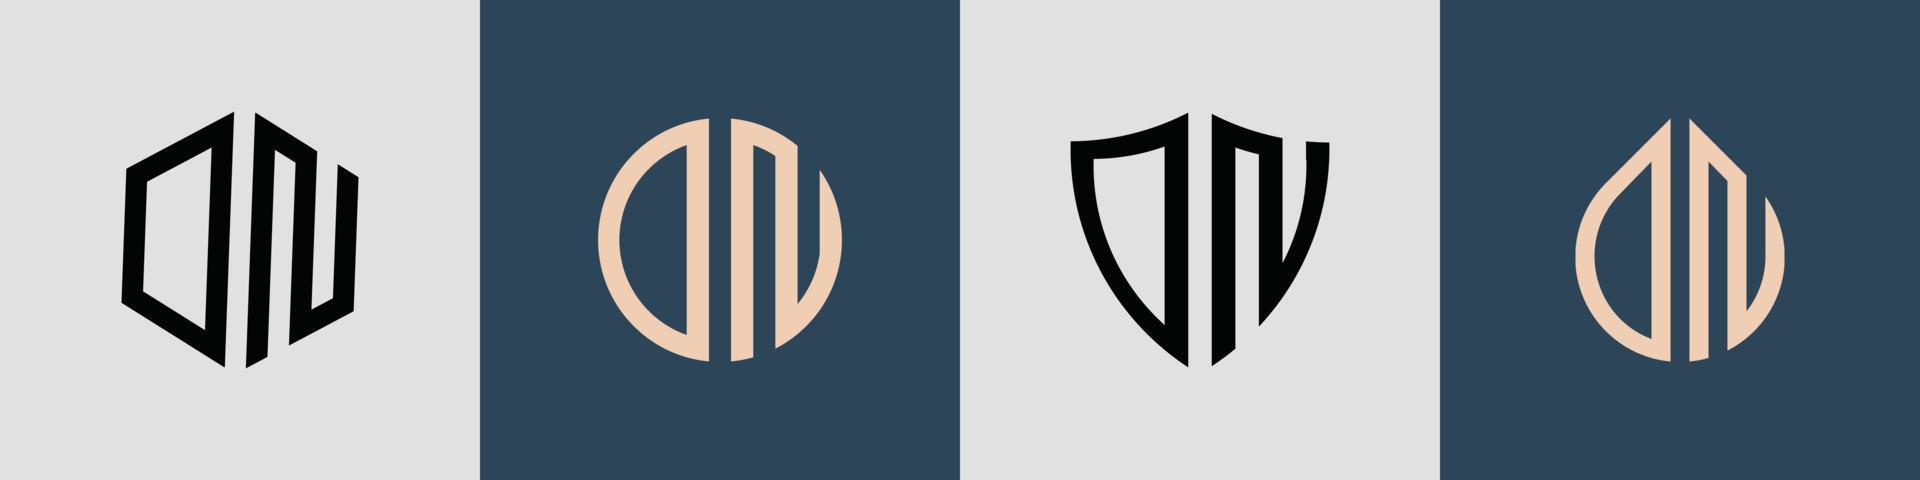 paquete de diseños de logotipos dn de letras iniciales simples y creativas. vector